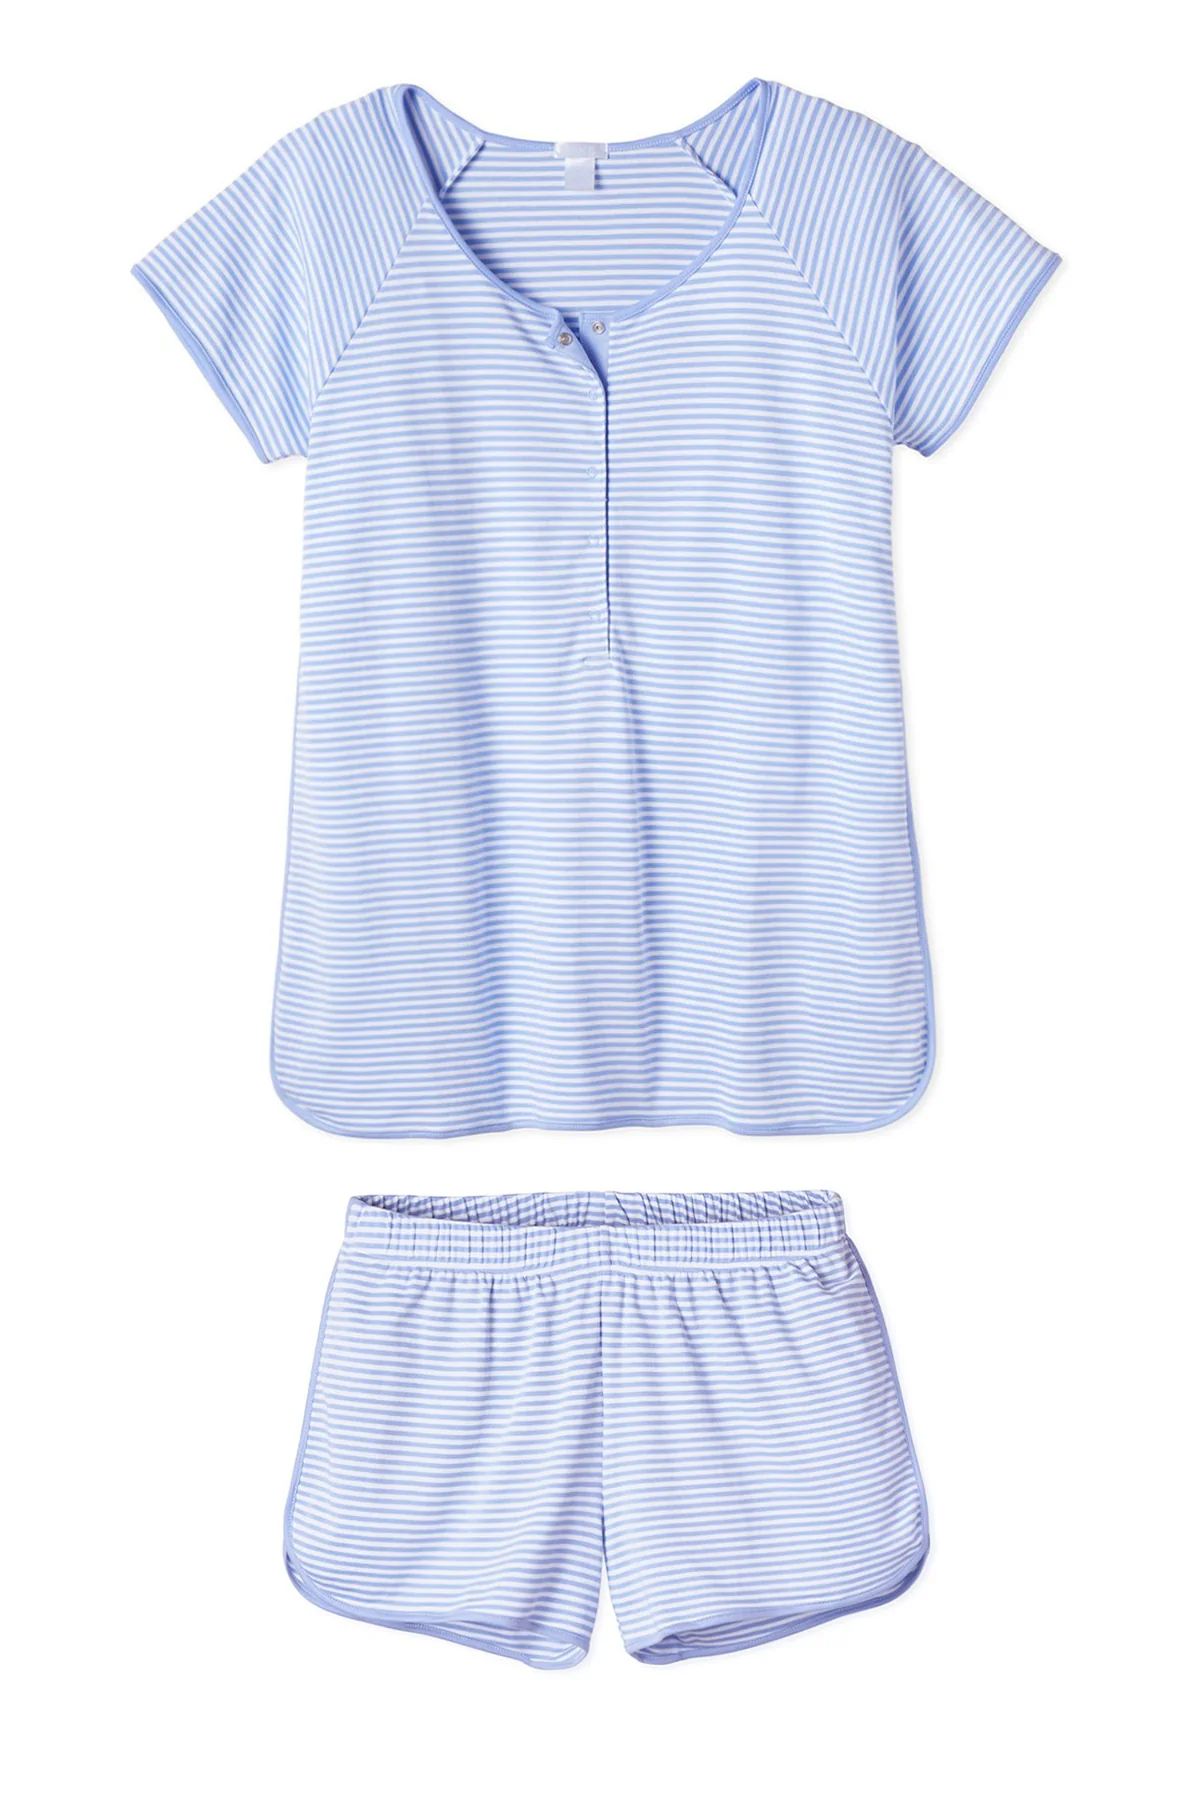 Pima Maternity Shorts Set in Hydrangea | Lake Pajamas